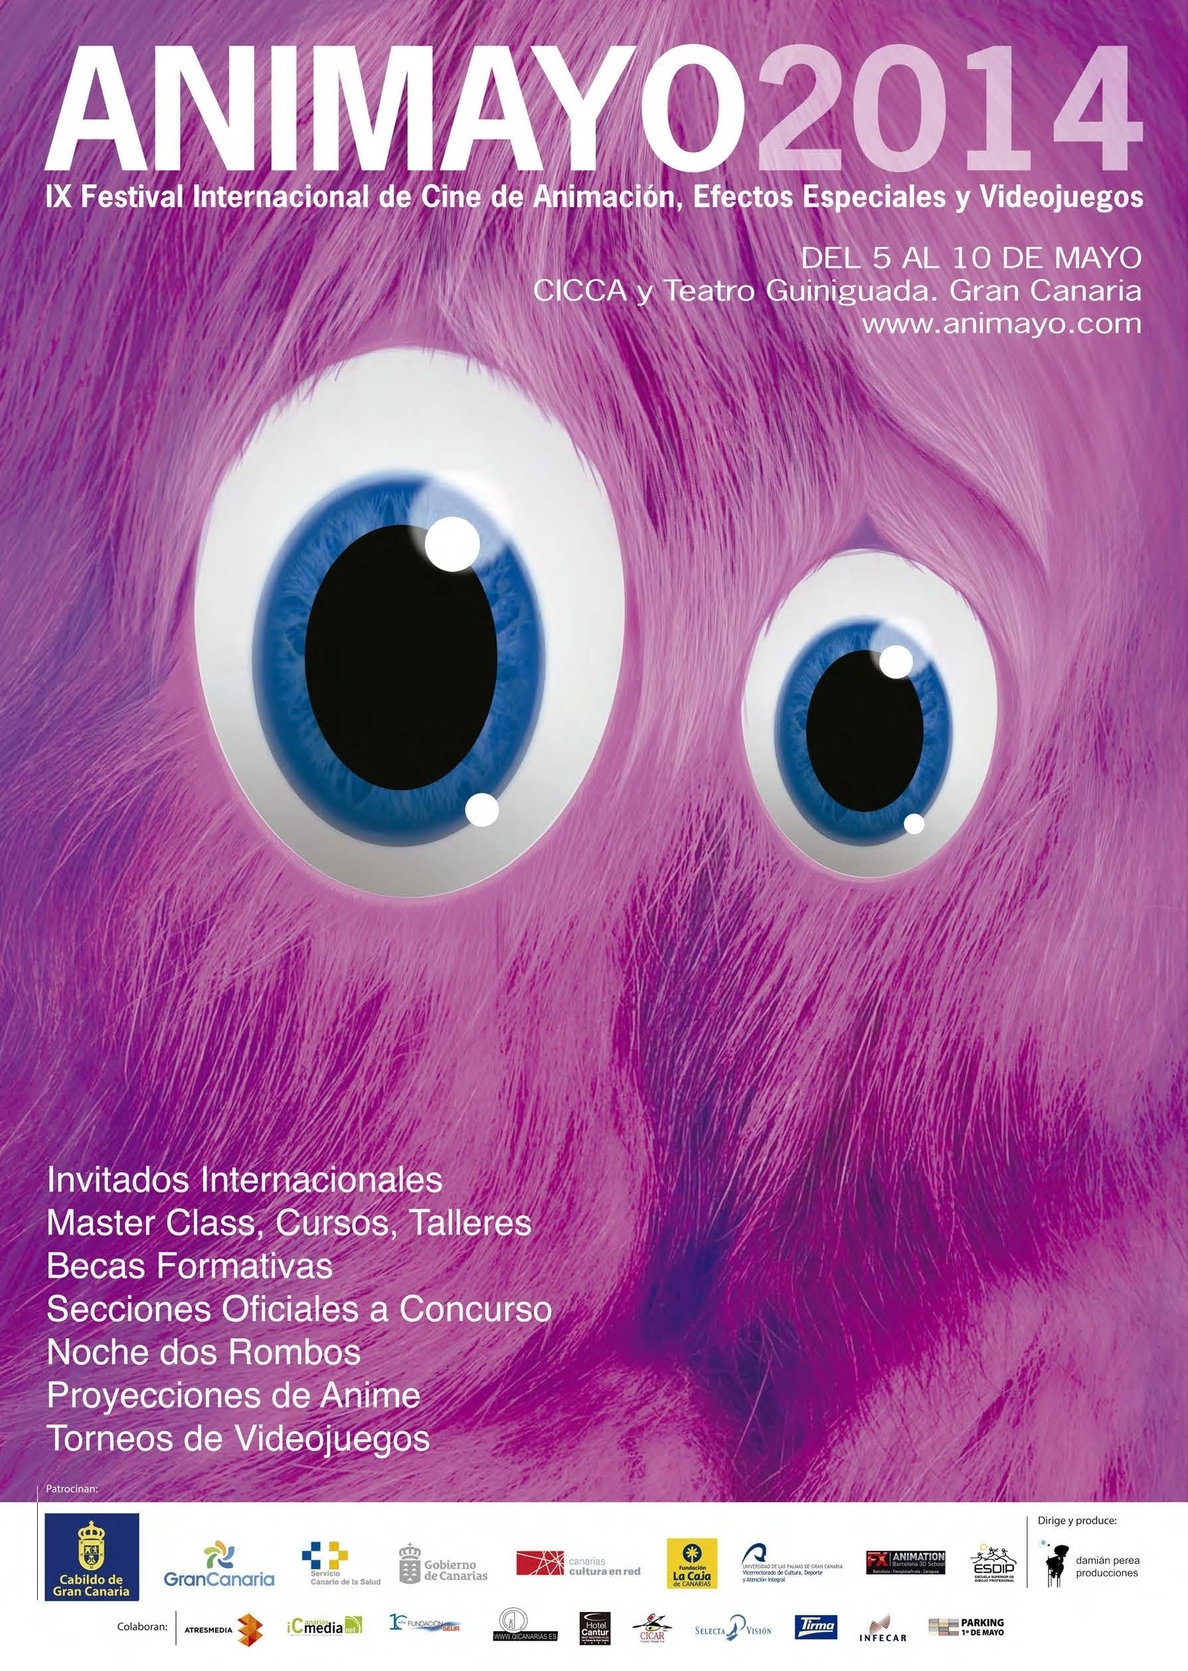 El Festival de Cine de Animación, Animayo, de Las Palmas de Gran Canaria ya trabaja en el programa de este año